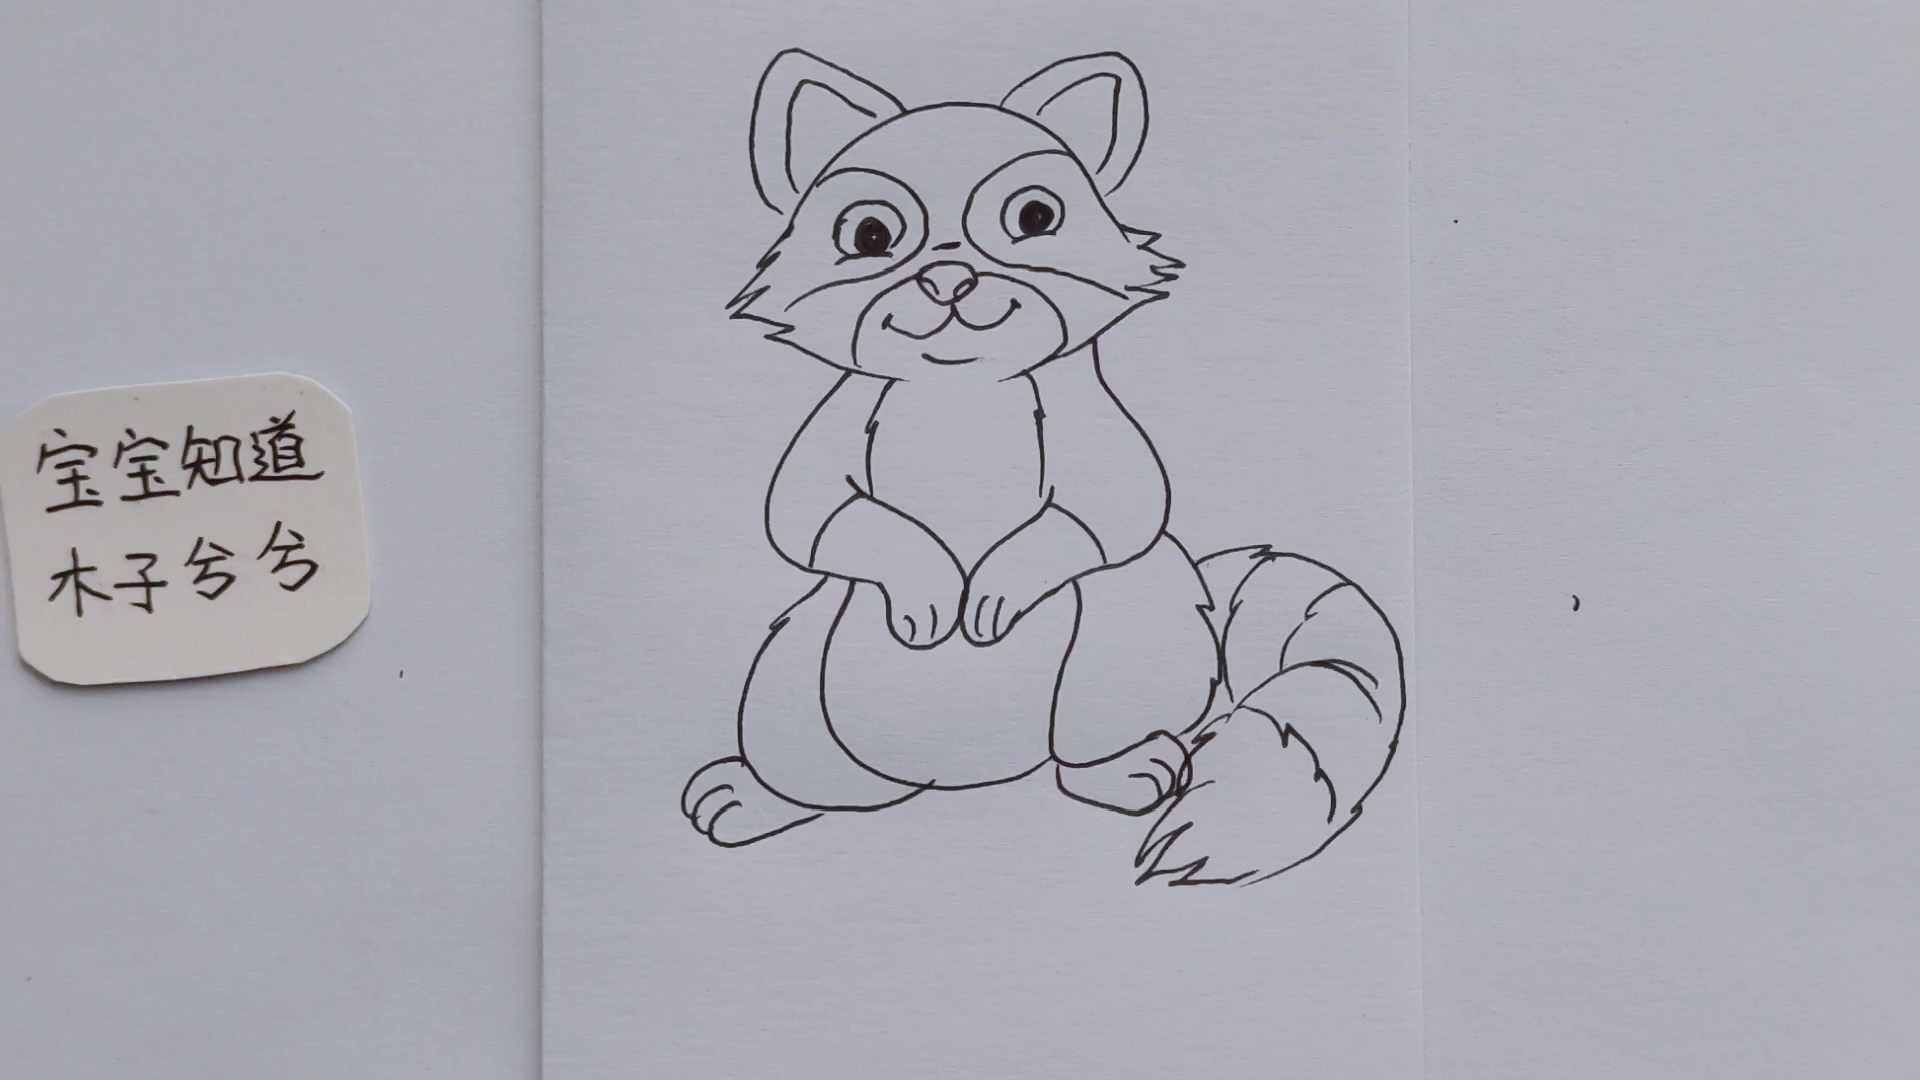 简笔画 画只坐在地上的小浣熊